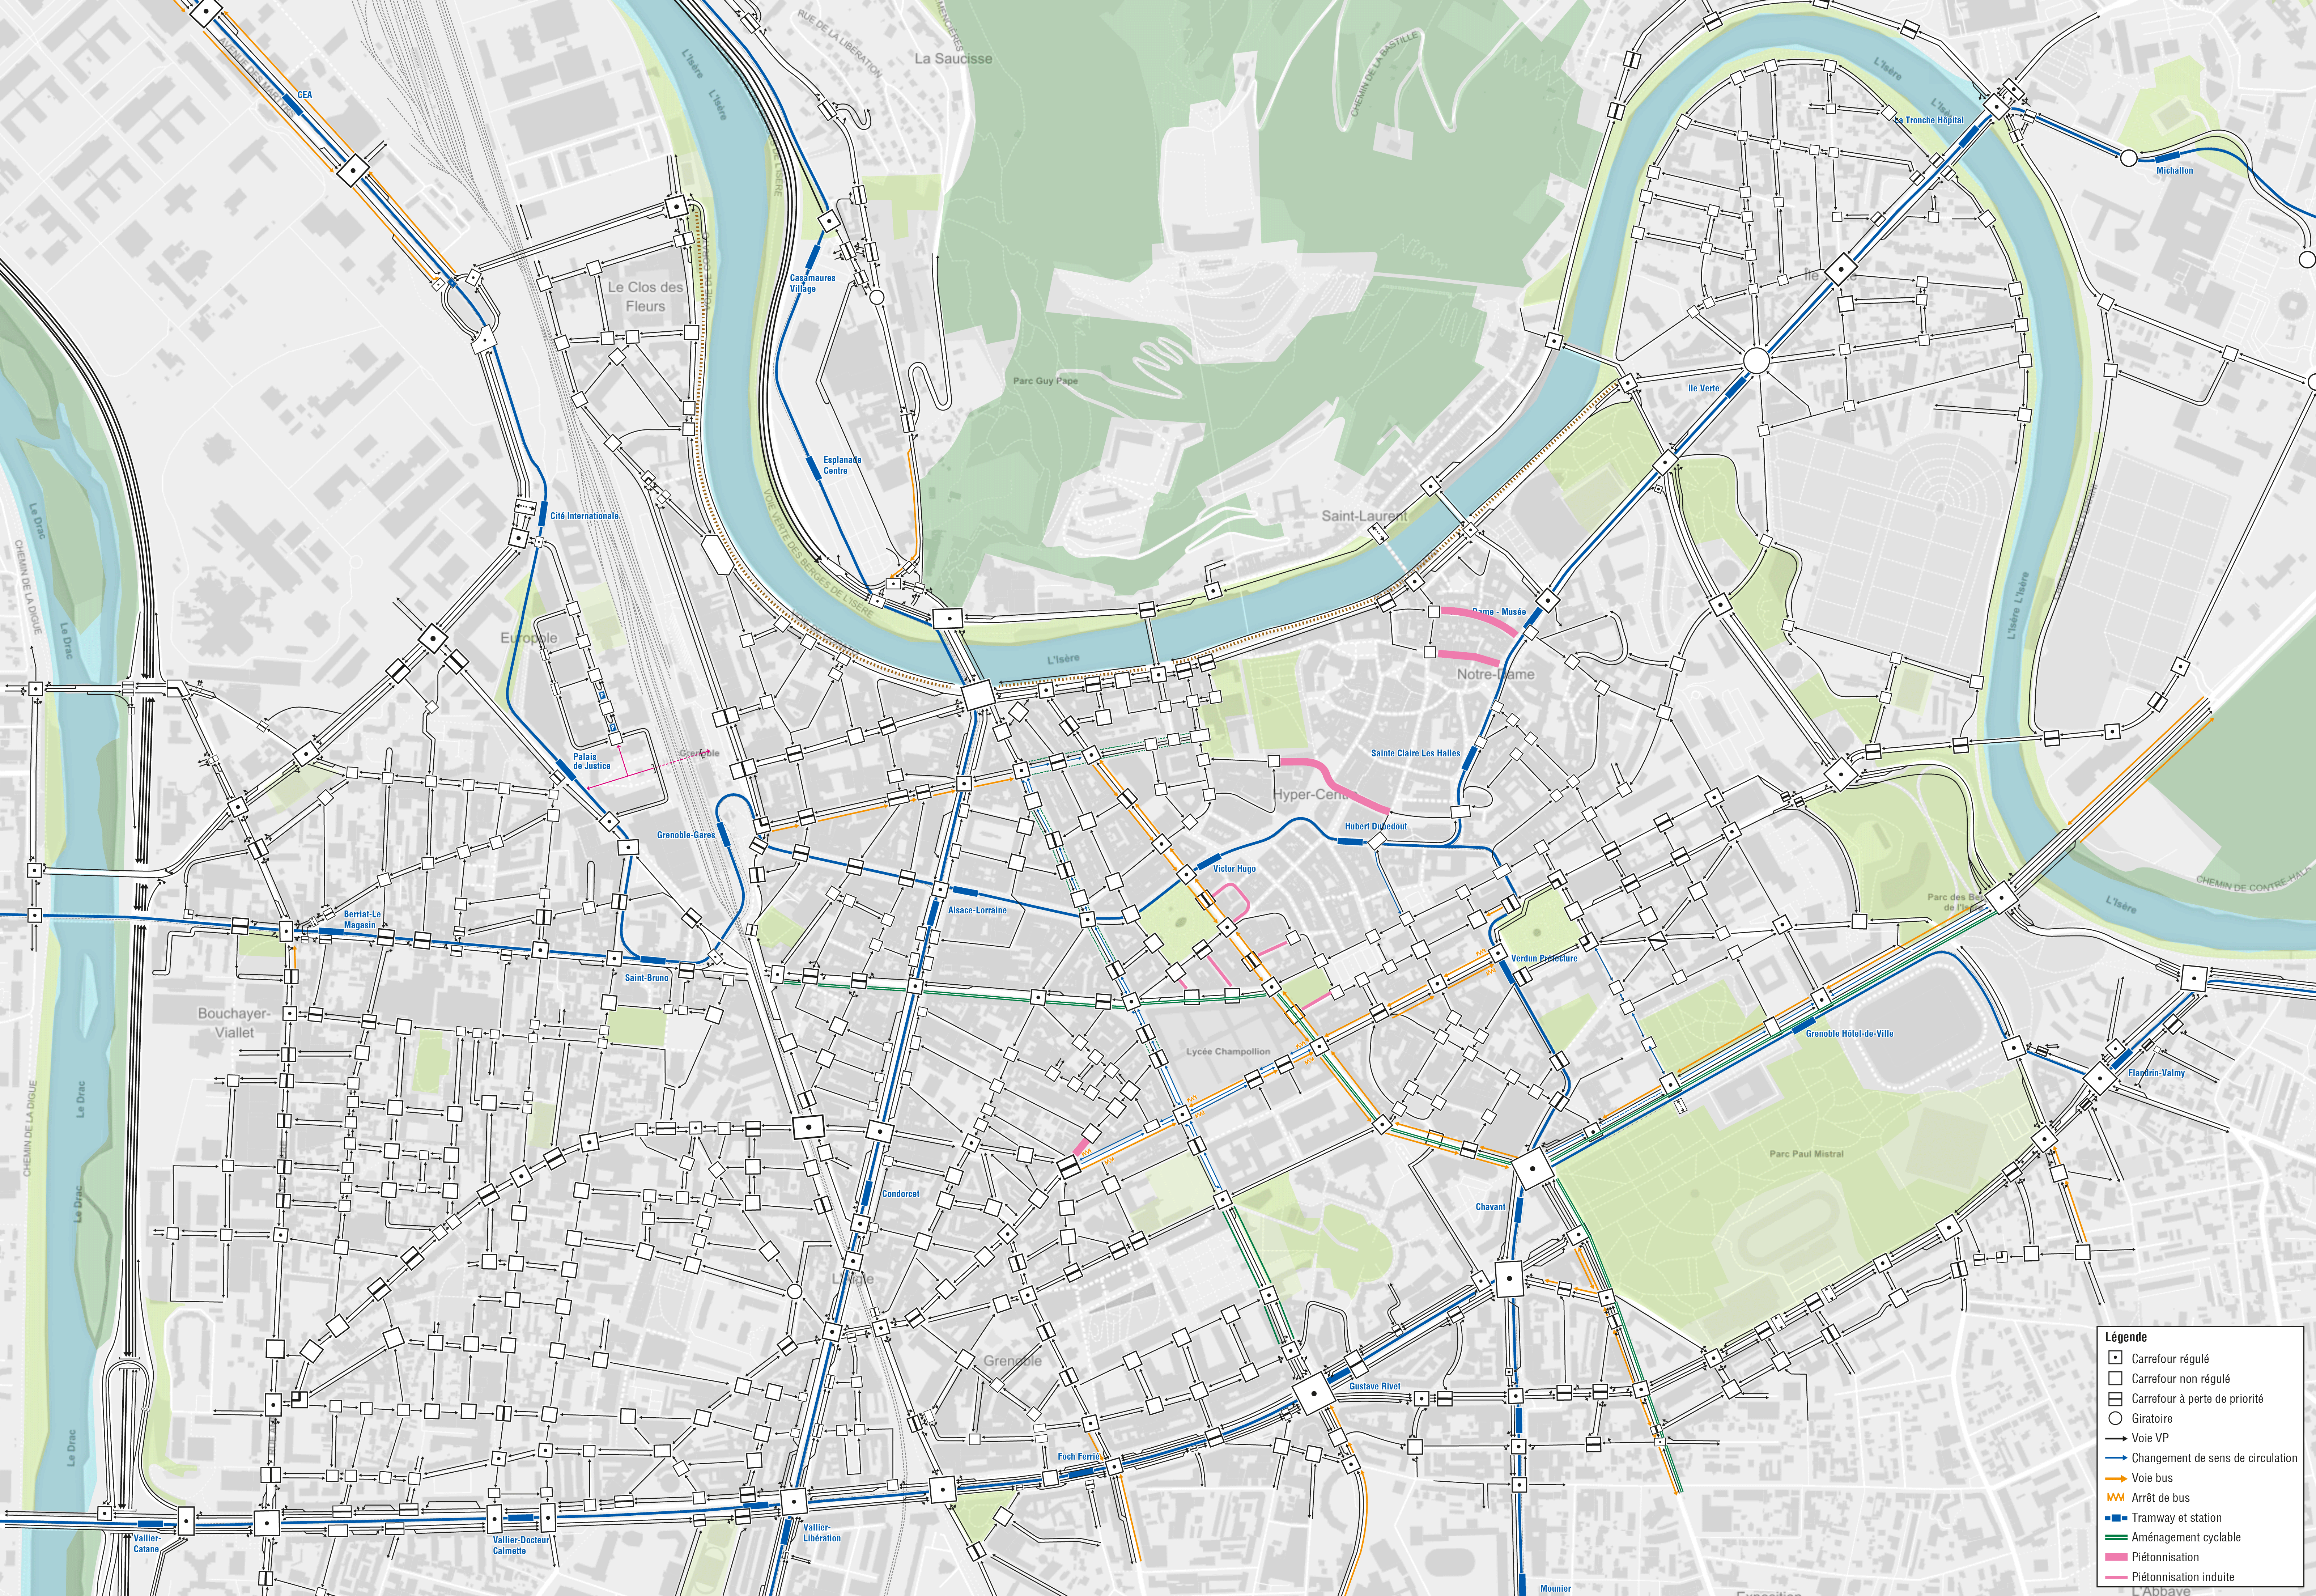 Plan de circulation du centre-ville